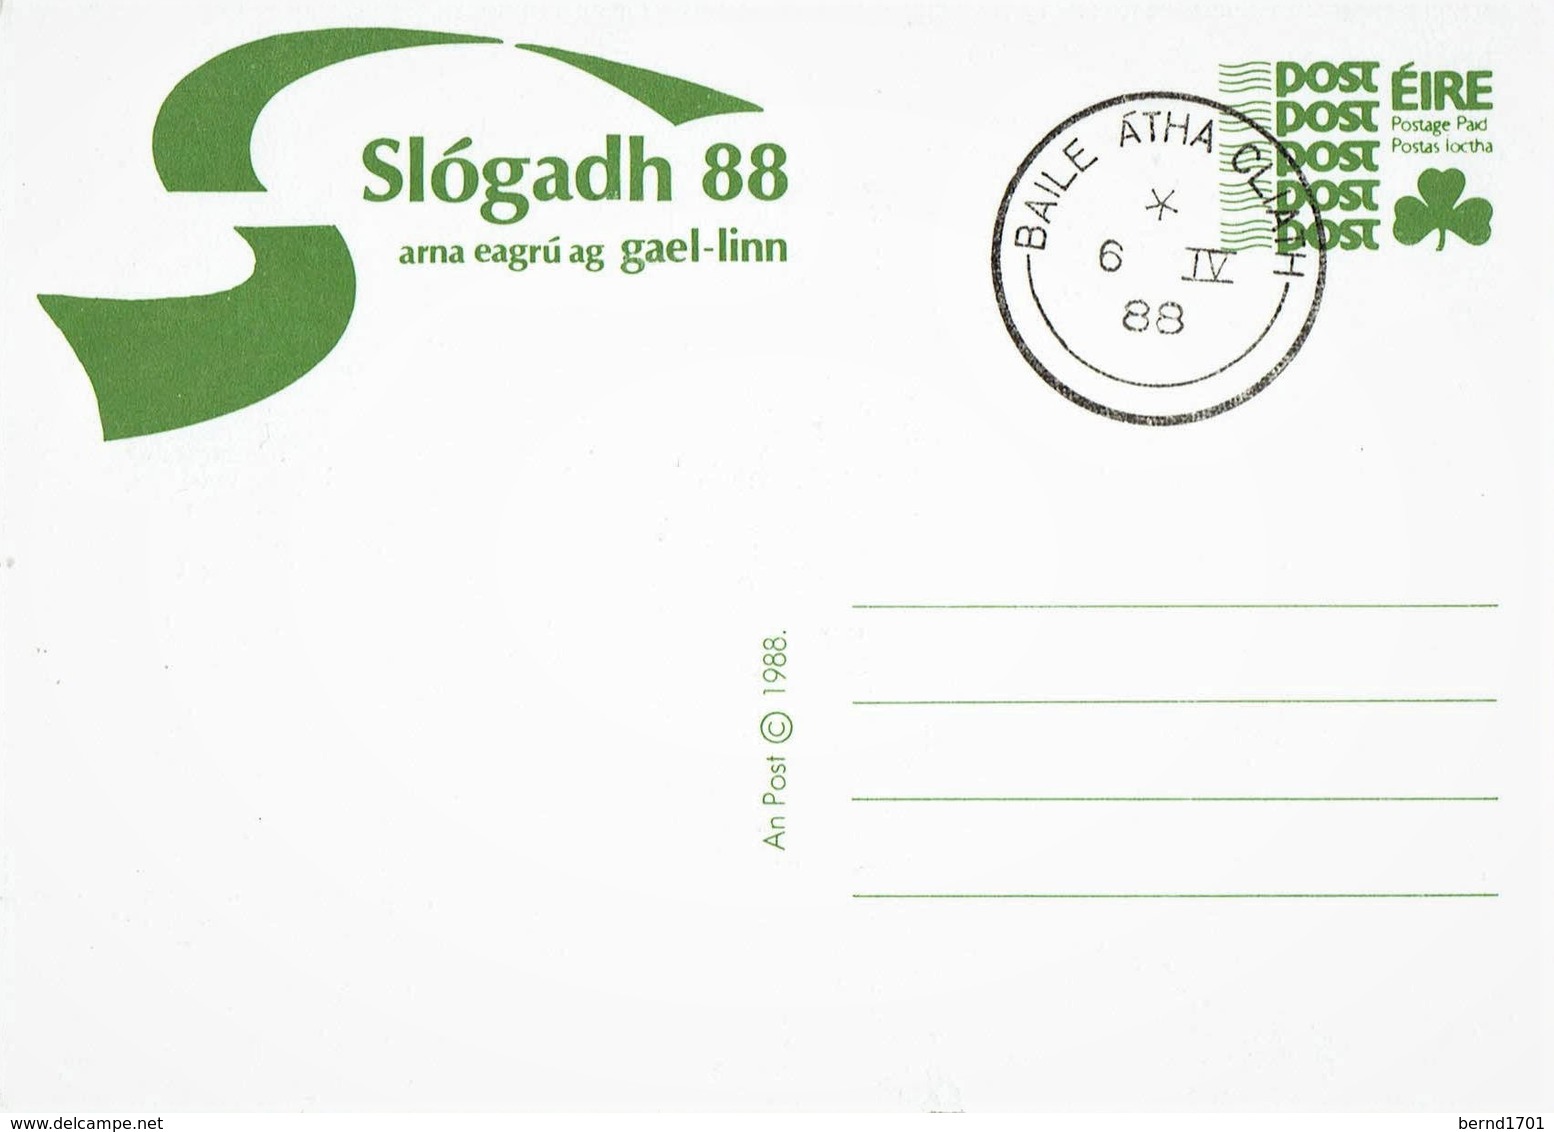 Irland / Ireland - Ganzsache Postkarte Gestempelt / Postcard Used (c259) - Ganzsachen